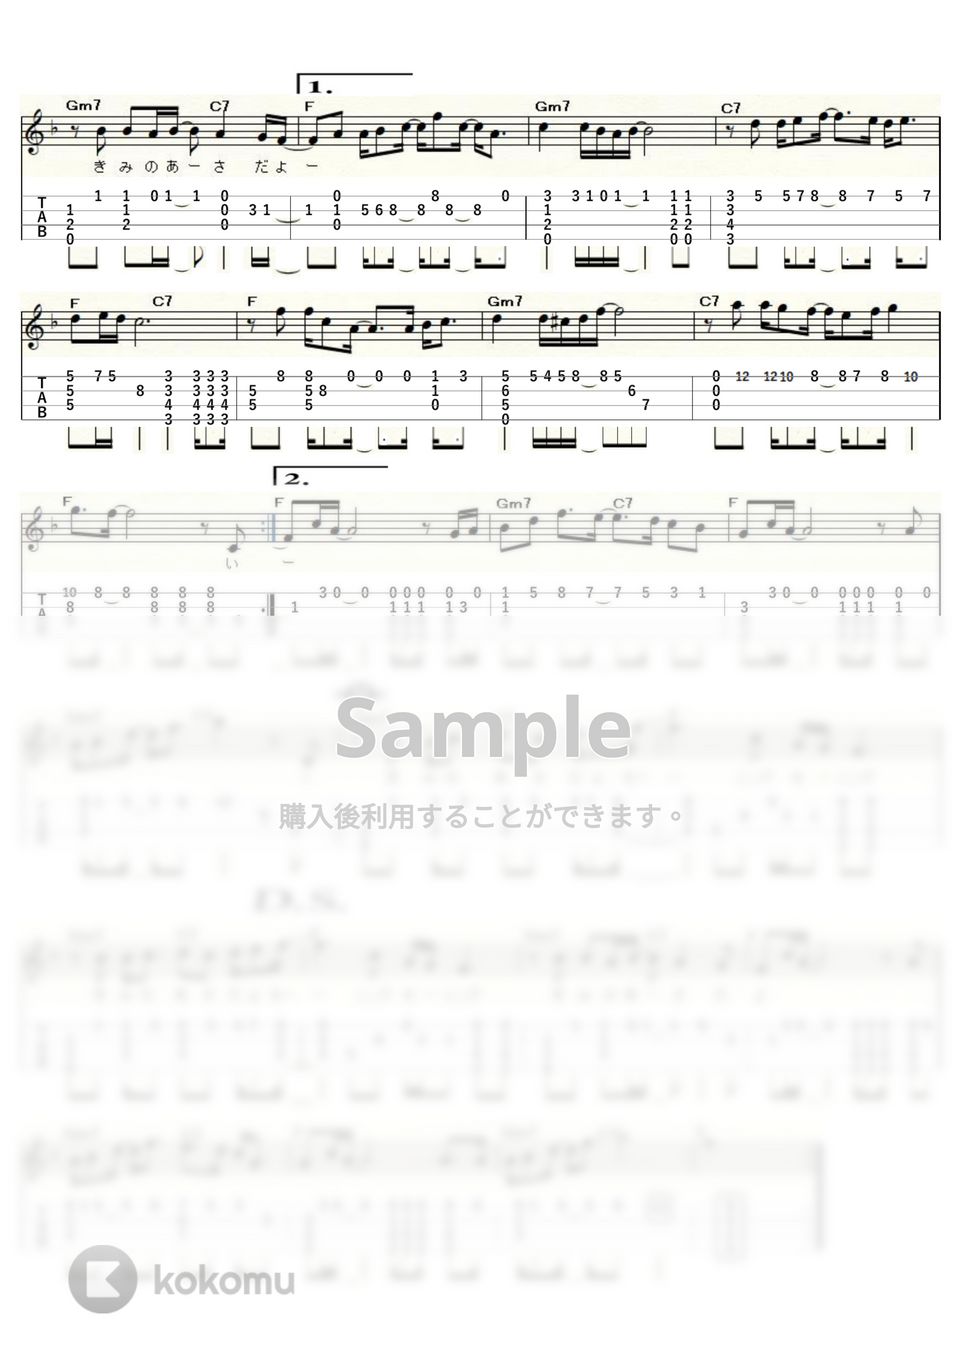 岸田智史 - きみの朝 (ｳｸﾚﾚｿﾛ / High-G・Low-G / 中級) by ukulelepapa